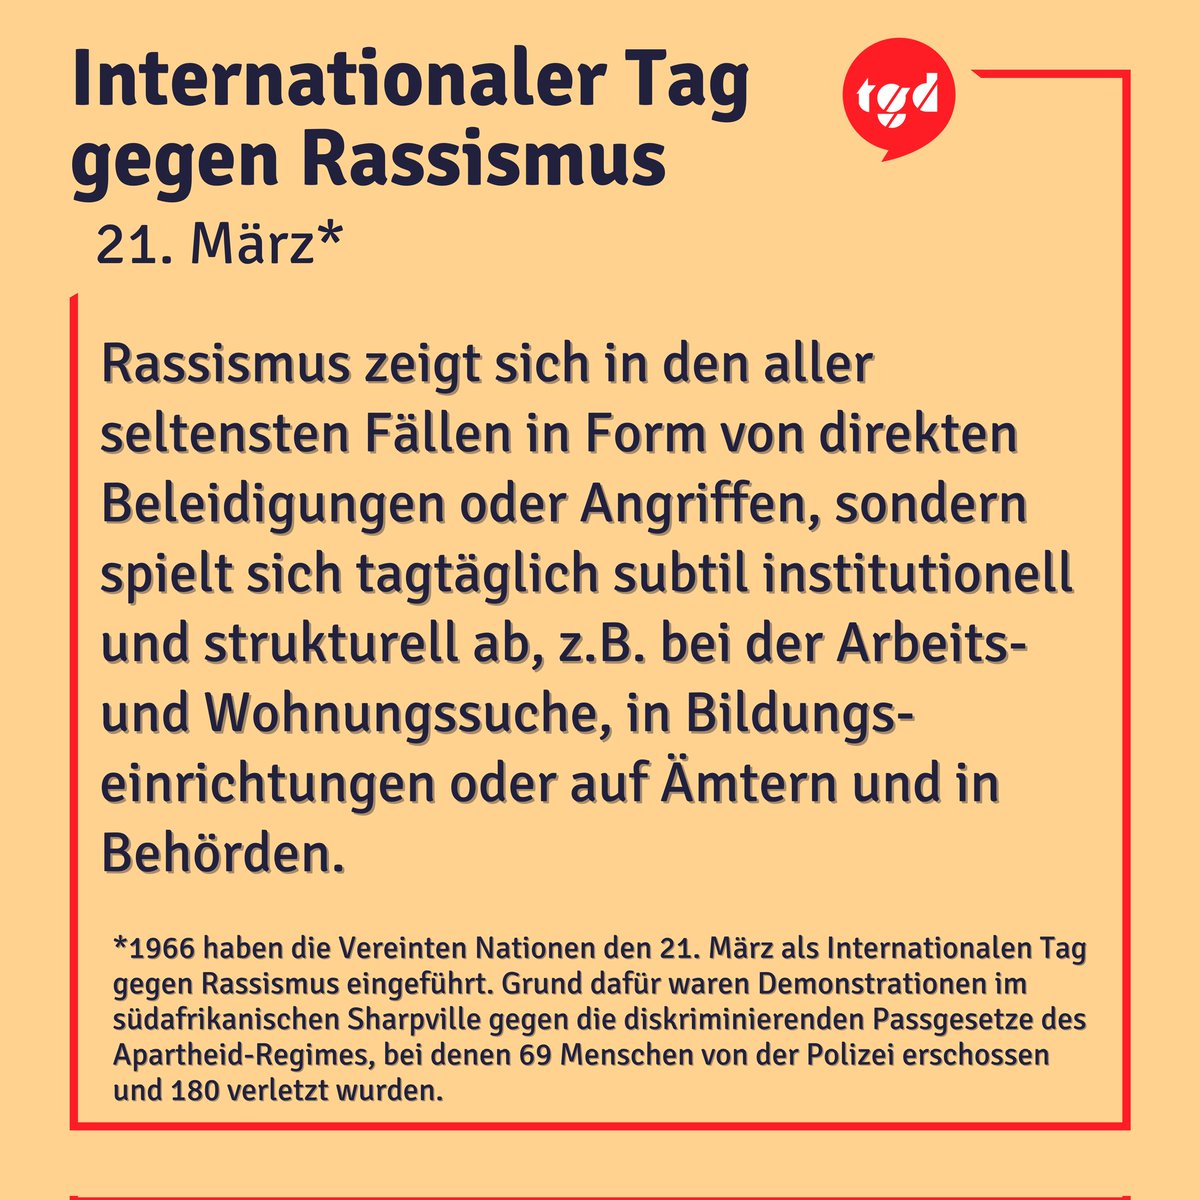 65% der Menschen in Deutschland sind direkt oder indirekt von #Rassismus betroffen. Während des internationalen Tags/der internationalen Wochen gegen Rassismus gibt es vermehrt Veranstaltungen wie Demonstrationen, Workshops und Kampagnen. Also: #mischdichein 
#iTgR #iWgR